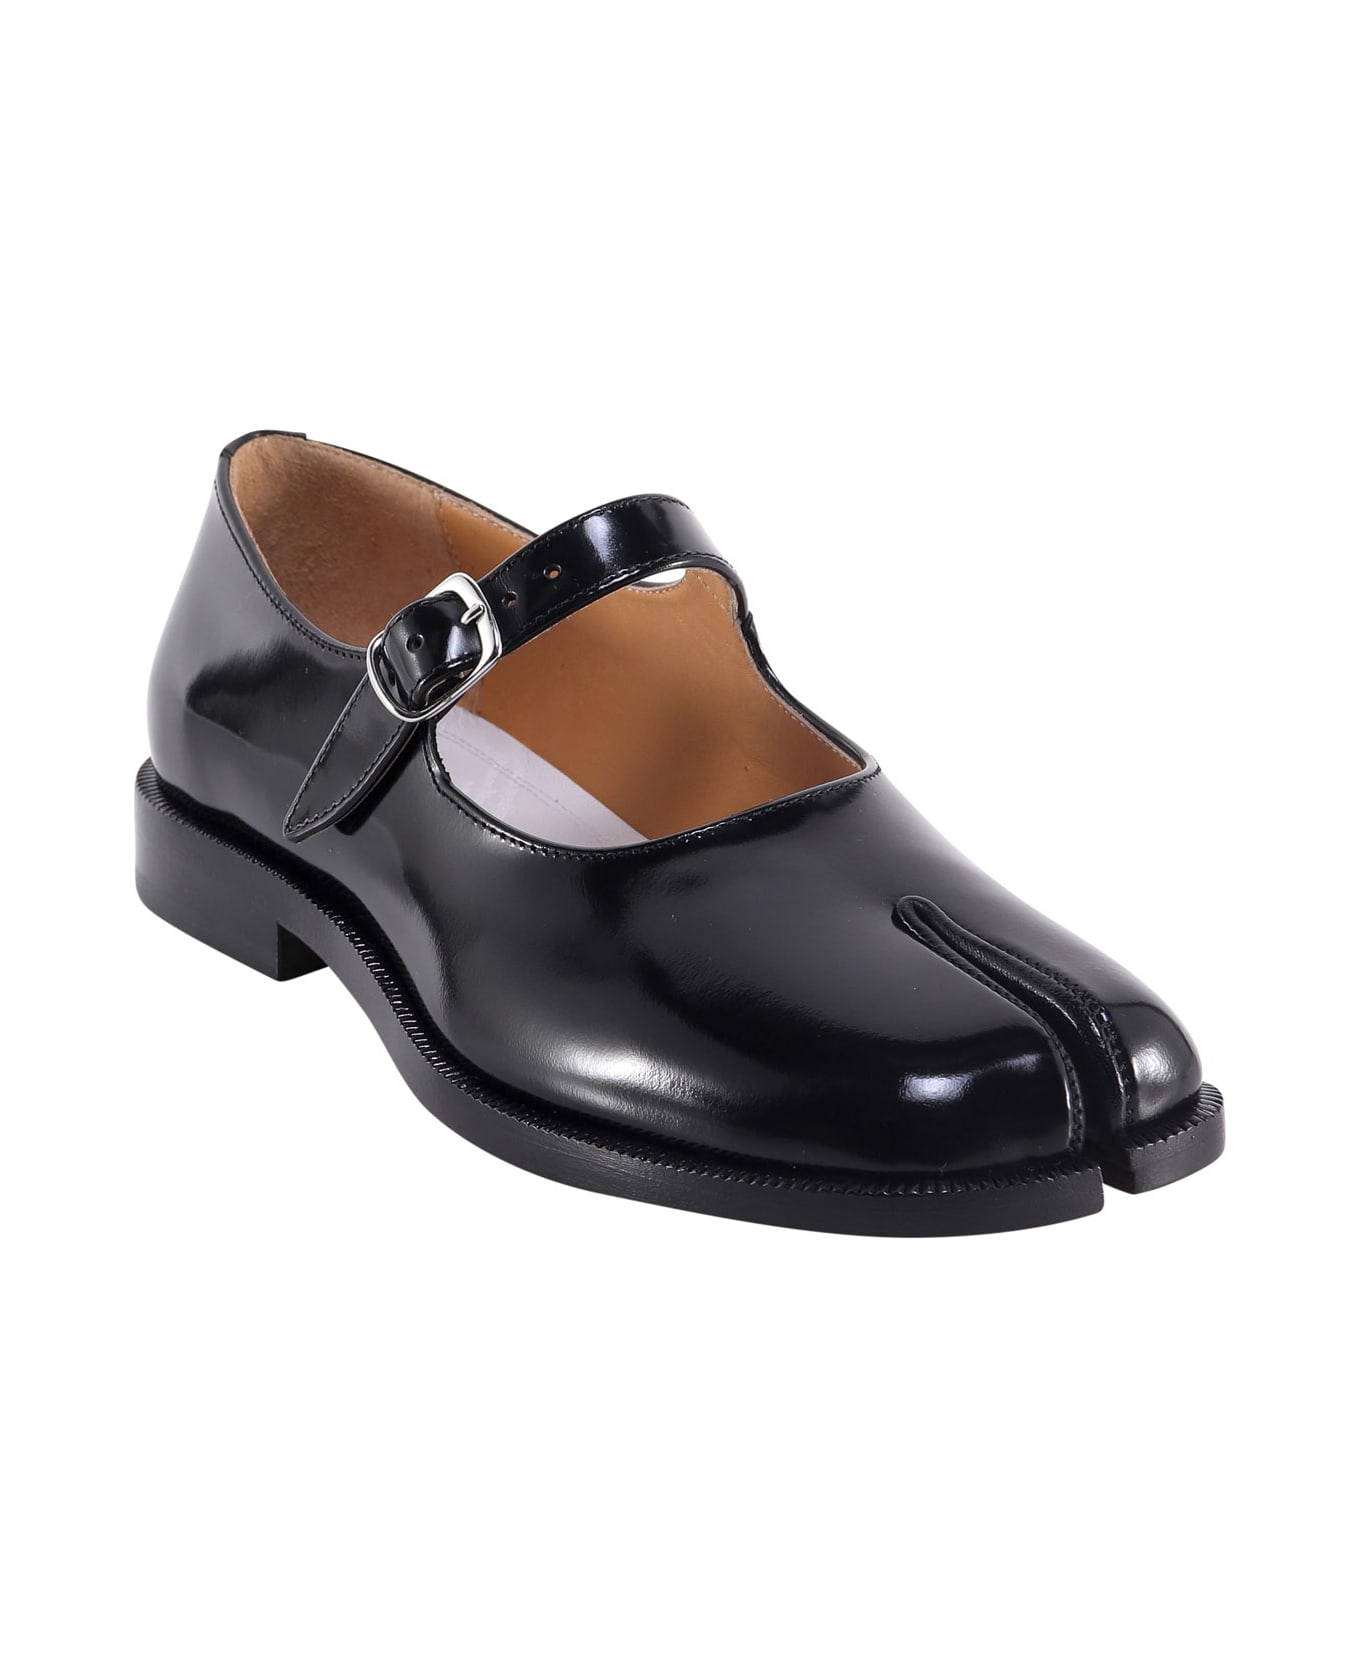 Maison Margiela Tabi Leather Mary Jane Shoes - Black フラットシューズ